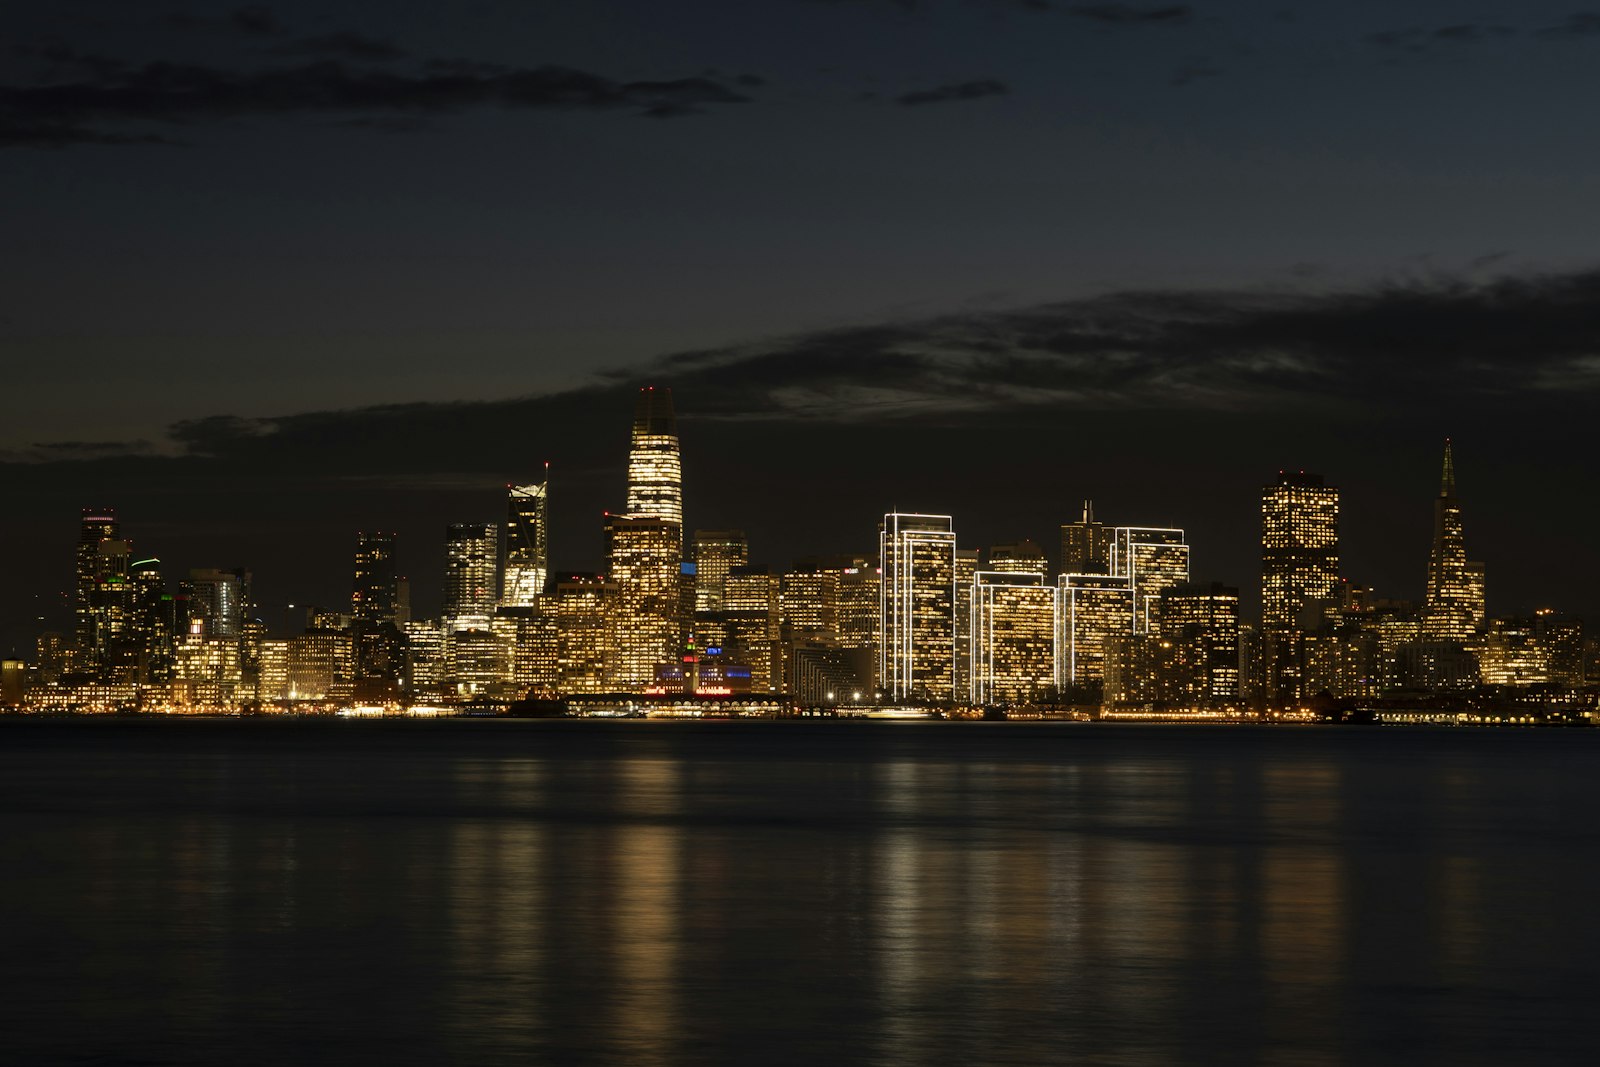 Nikon AF-S Nikkor 24-70mm F2.8E ED VR sample photo. City skyline during night photography